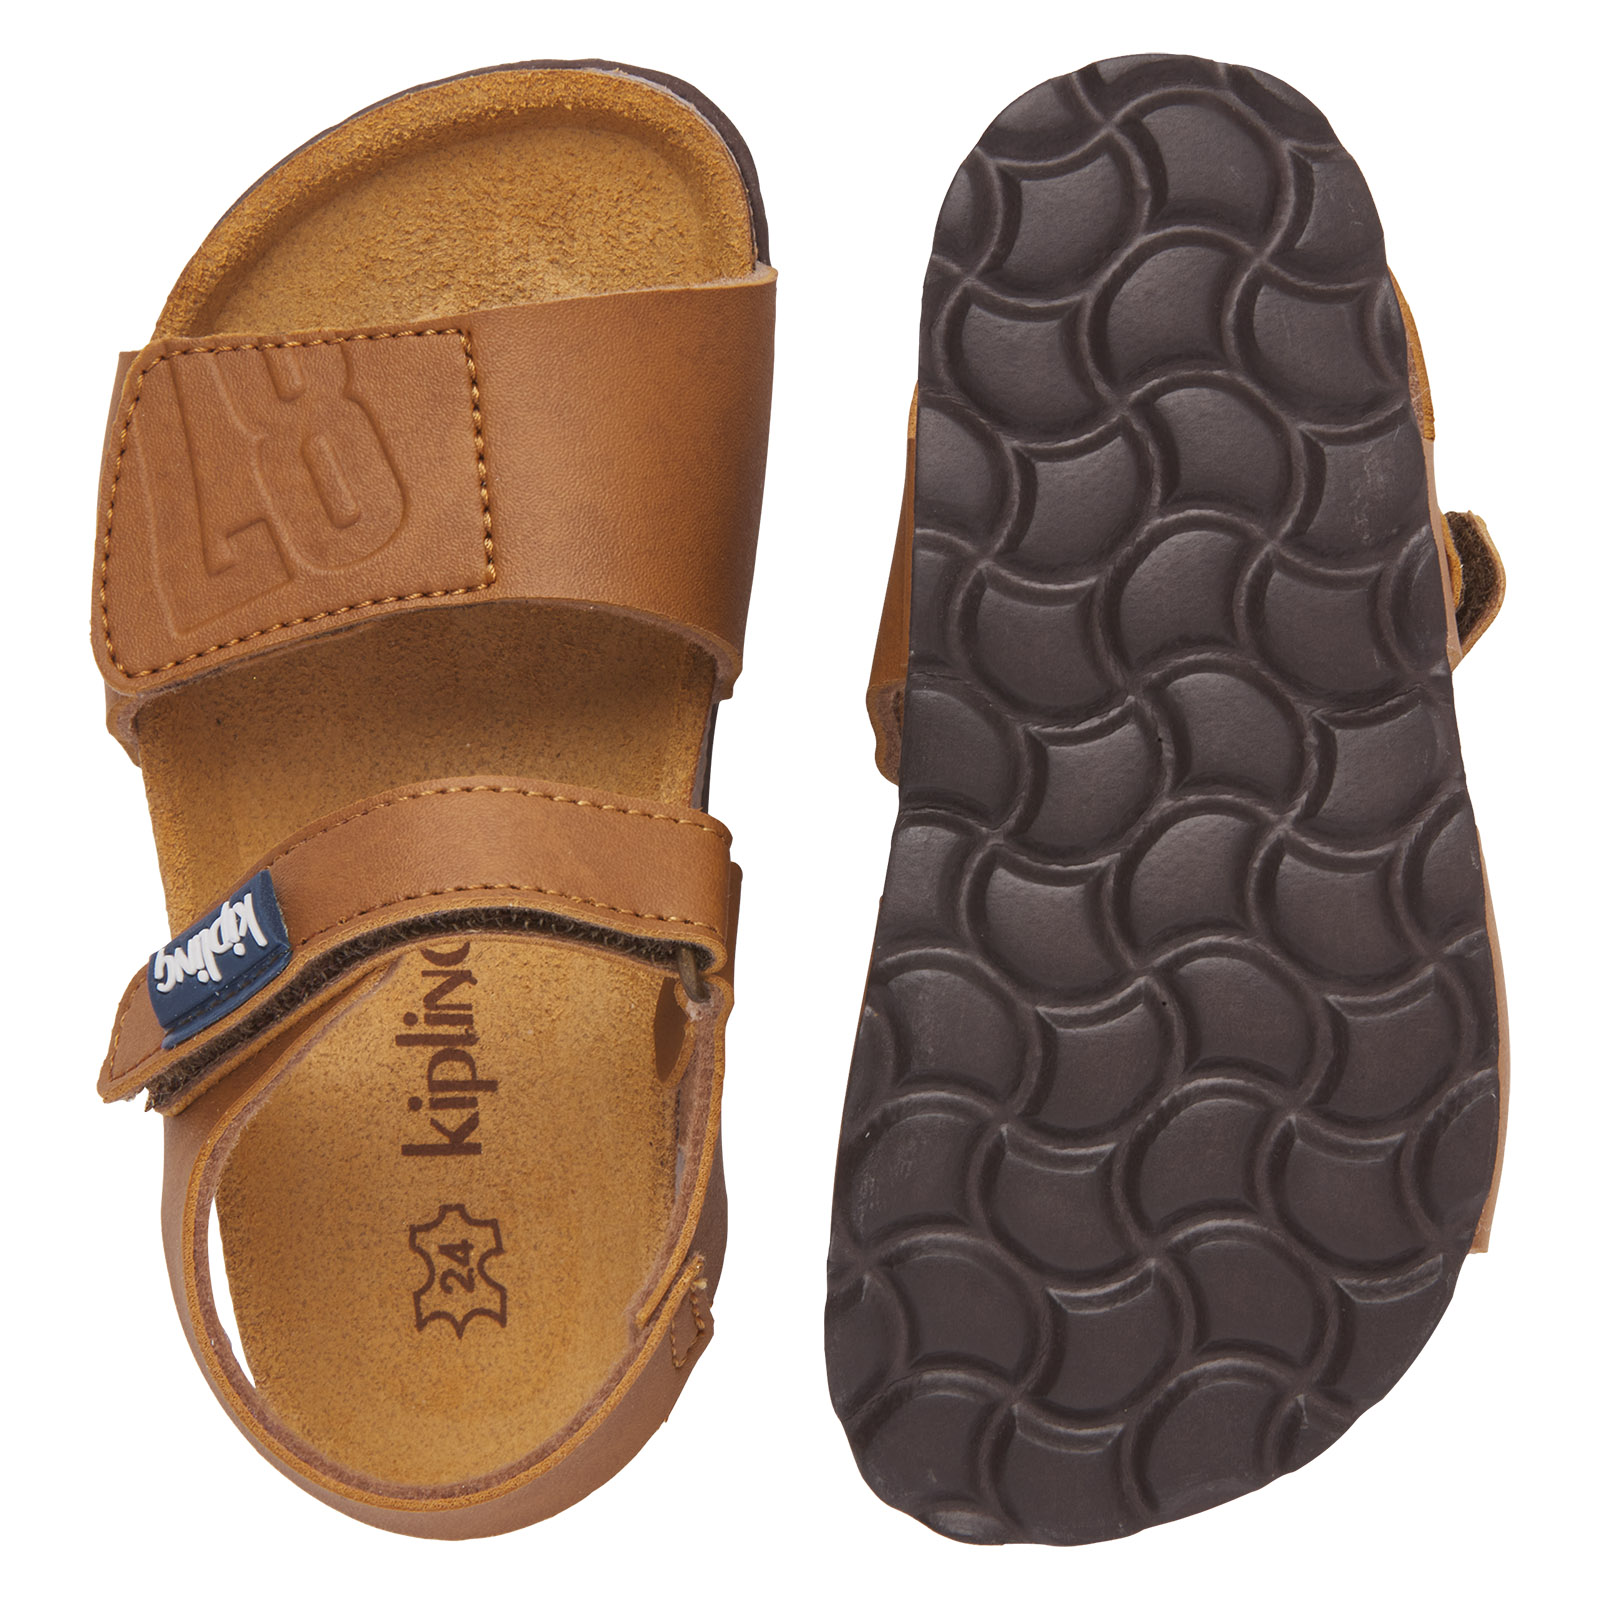 Traditie postkantoor identificatie Breed aanbod stoere sandalen jongens | Kipling schoenen